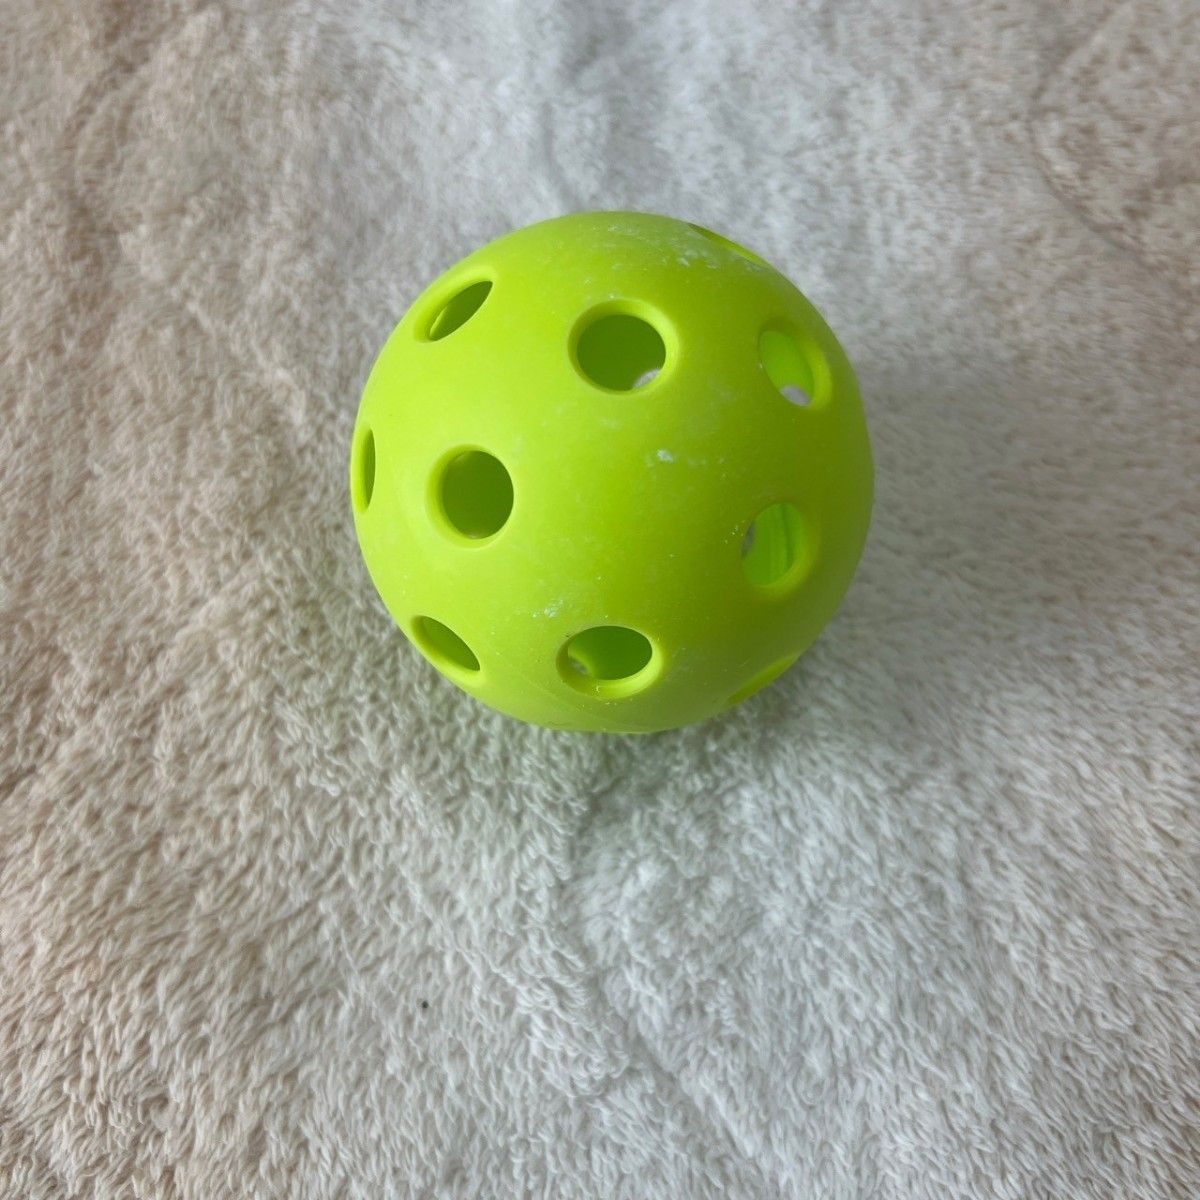 A29　ボール　穴あき　72mm　17個セット　ゴルフ　バッティング　野球　練習　 室内練習　蛍光　 プラスチックボール